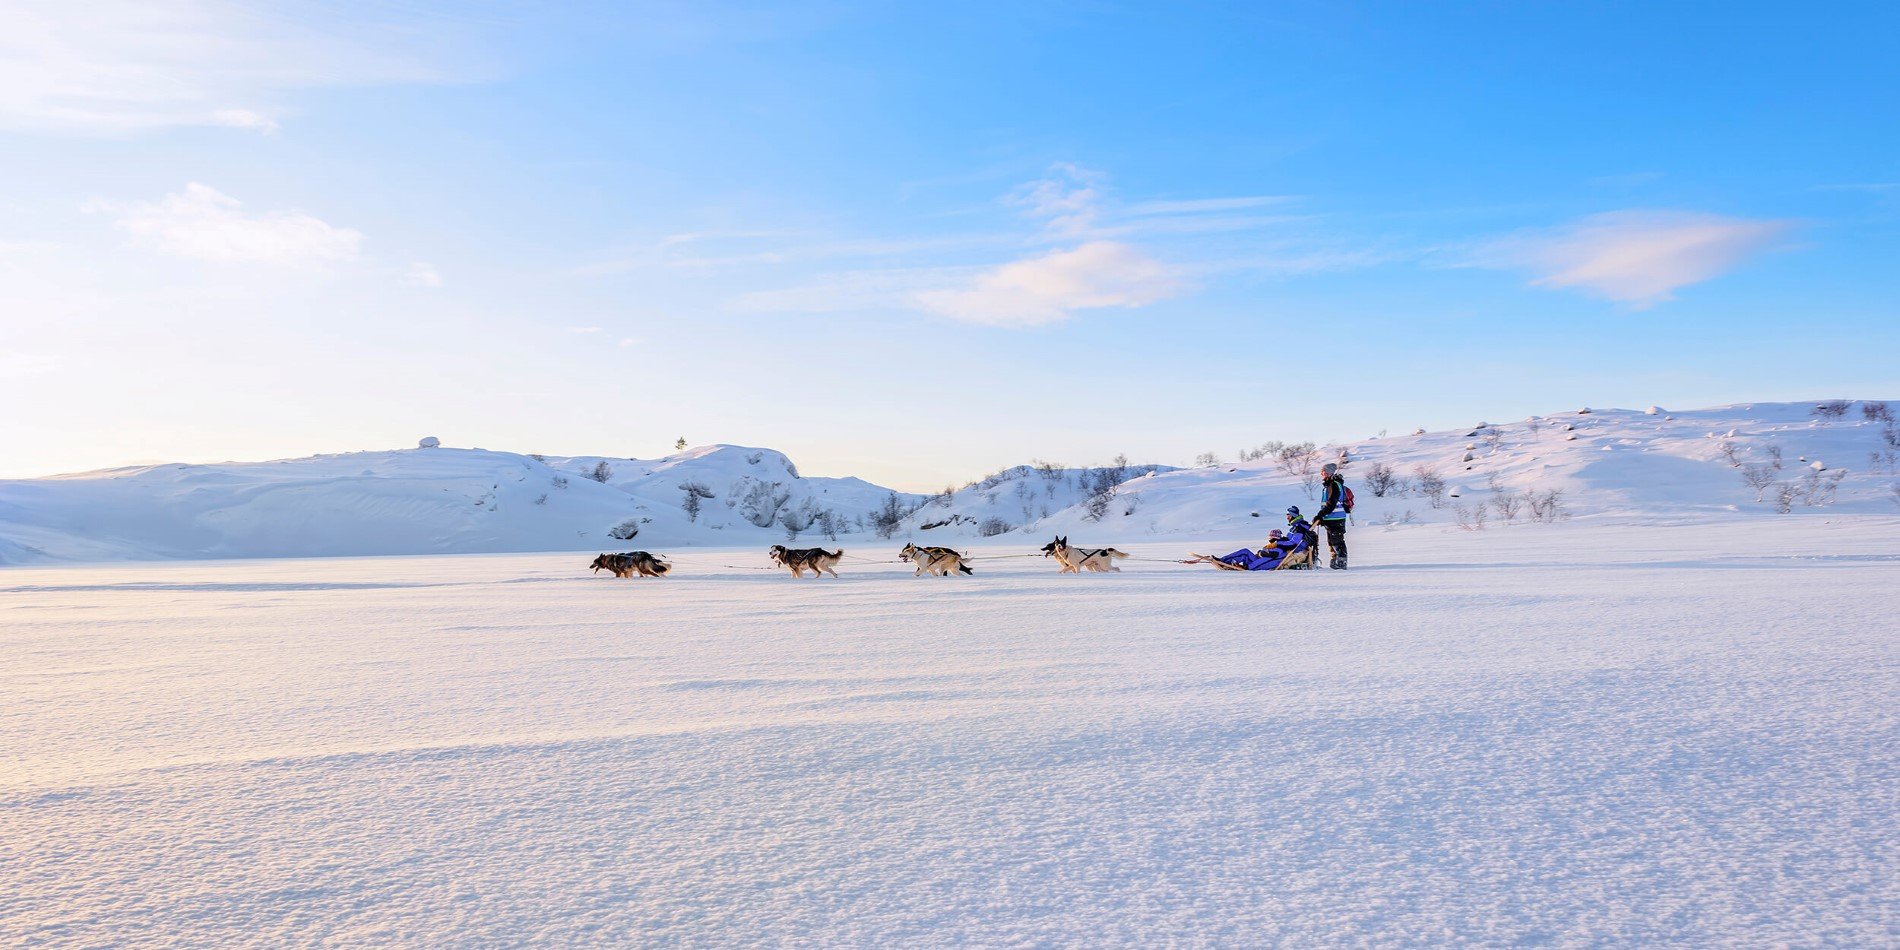 En gruppe mennesker som rir på ski på en snødekte ås